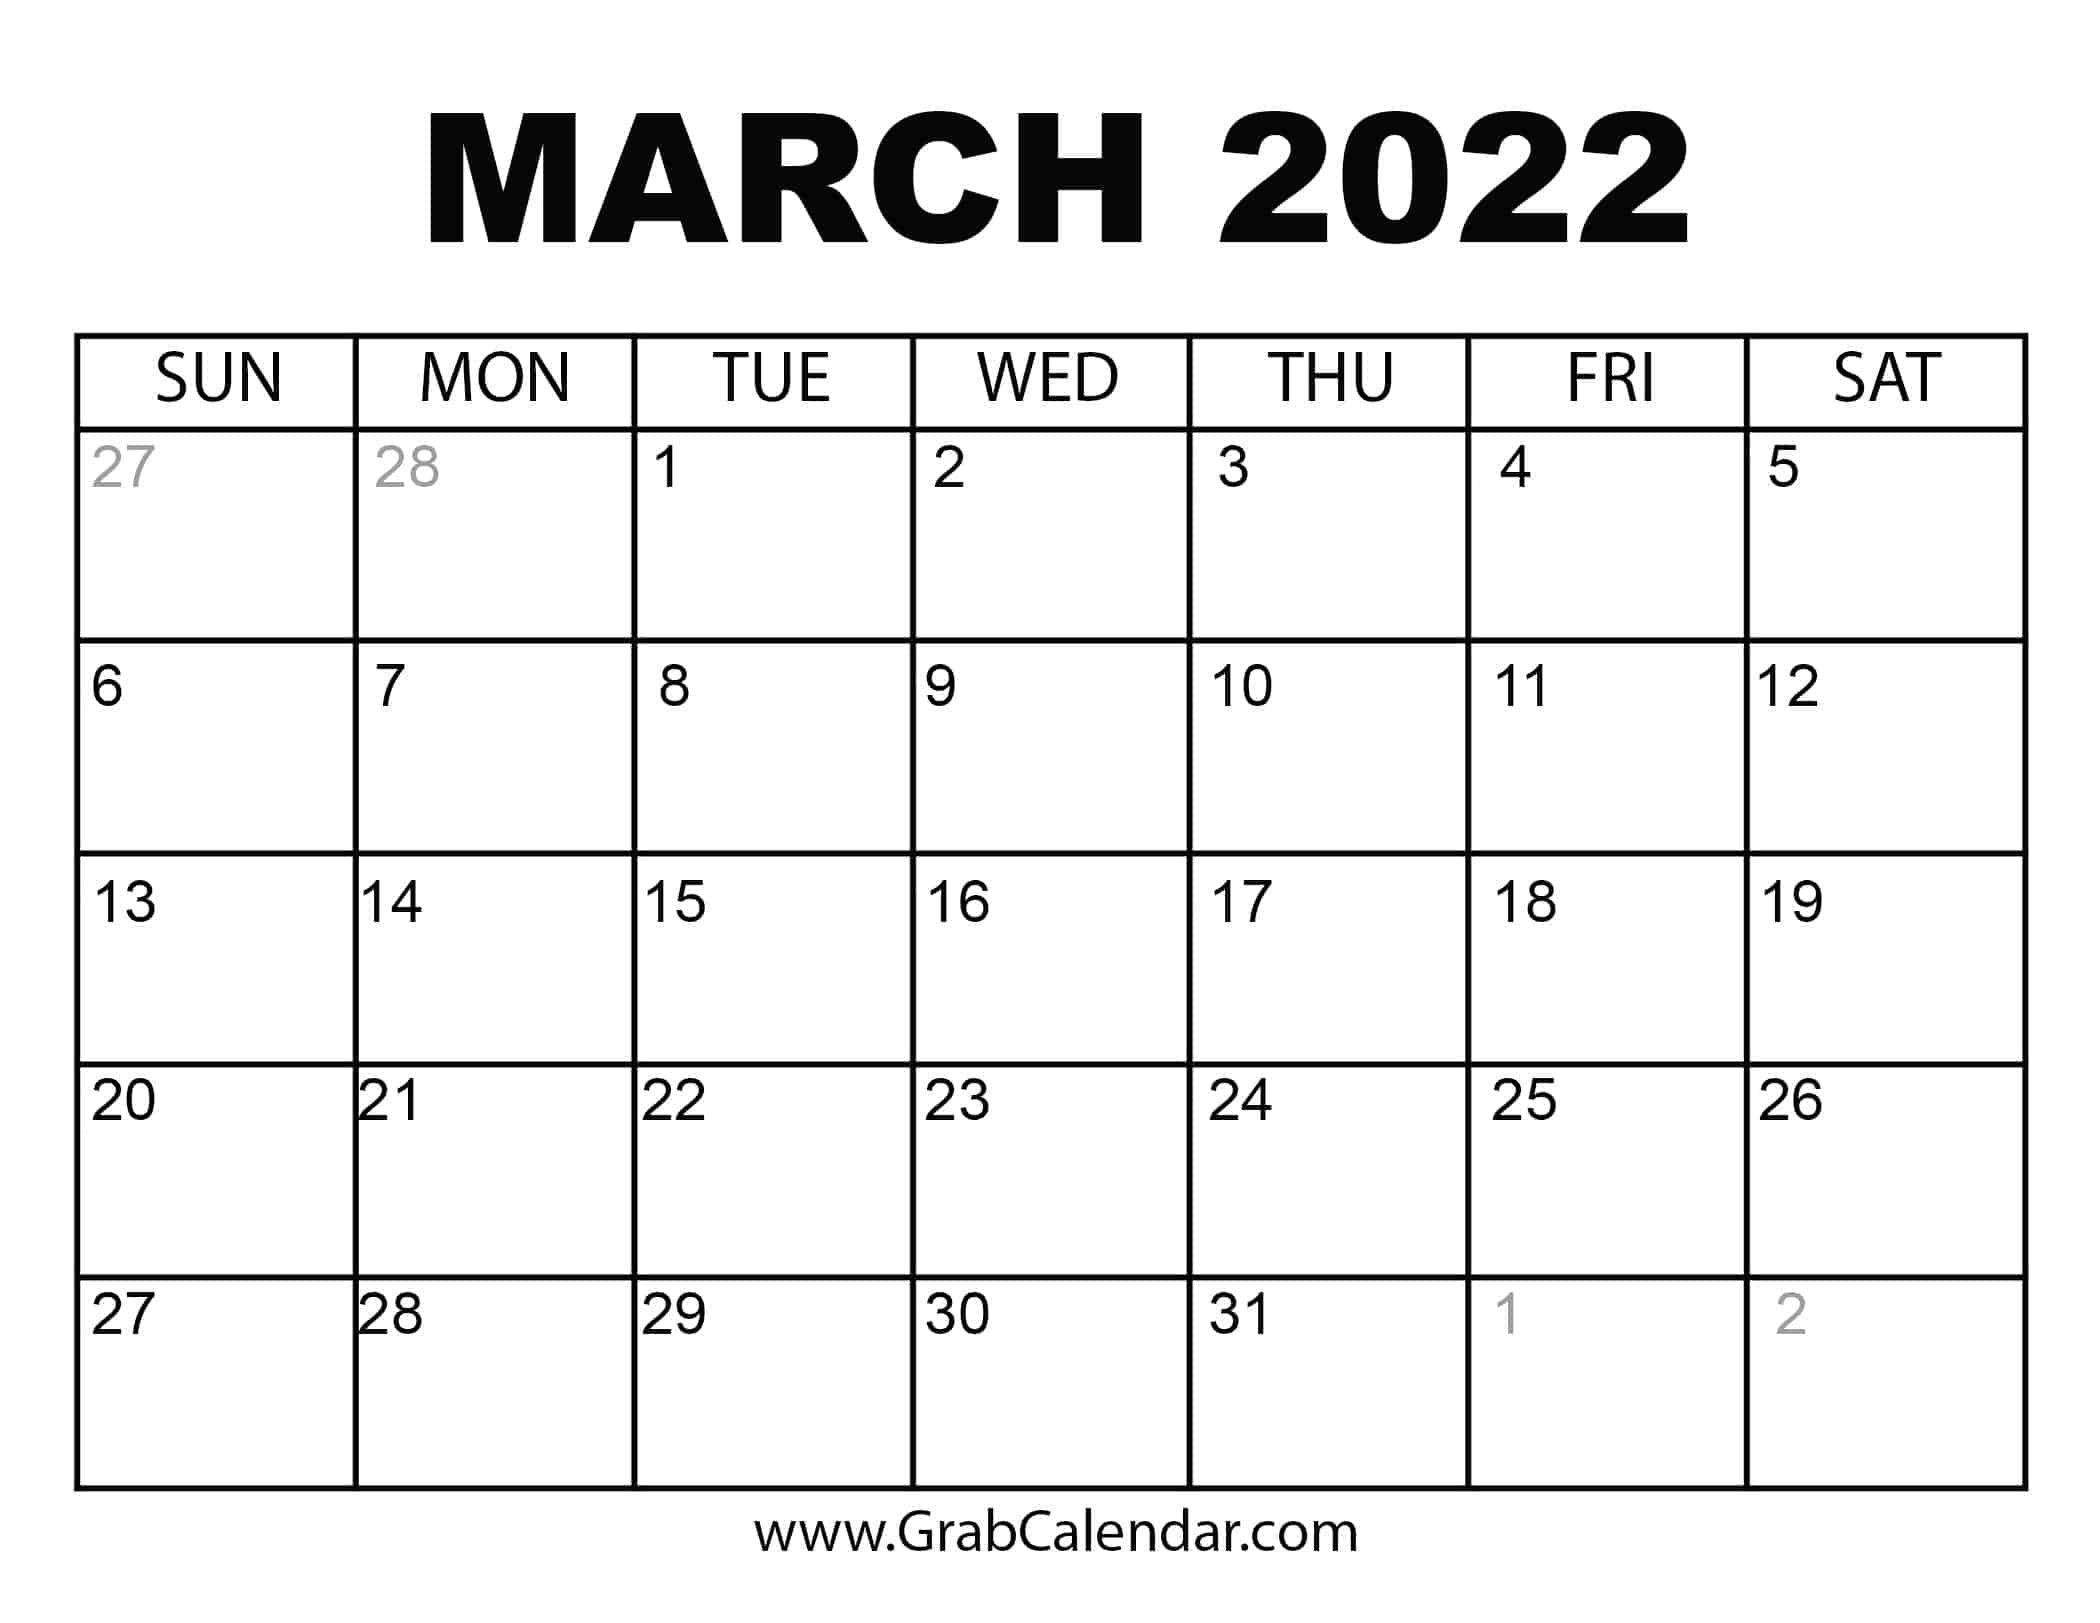 March 2022 Calendar Printable March 2022 Calendar